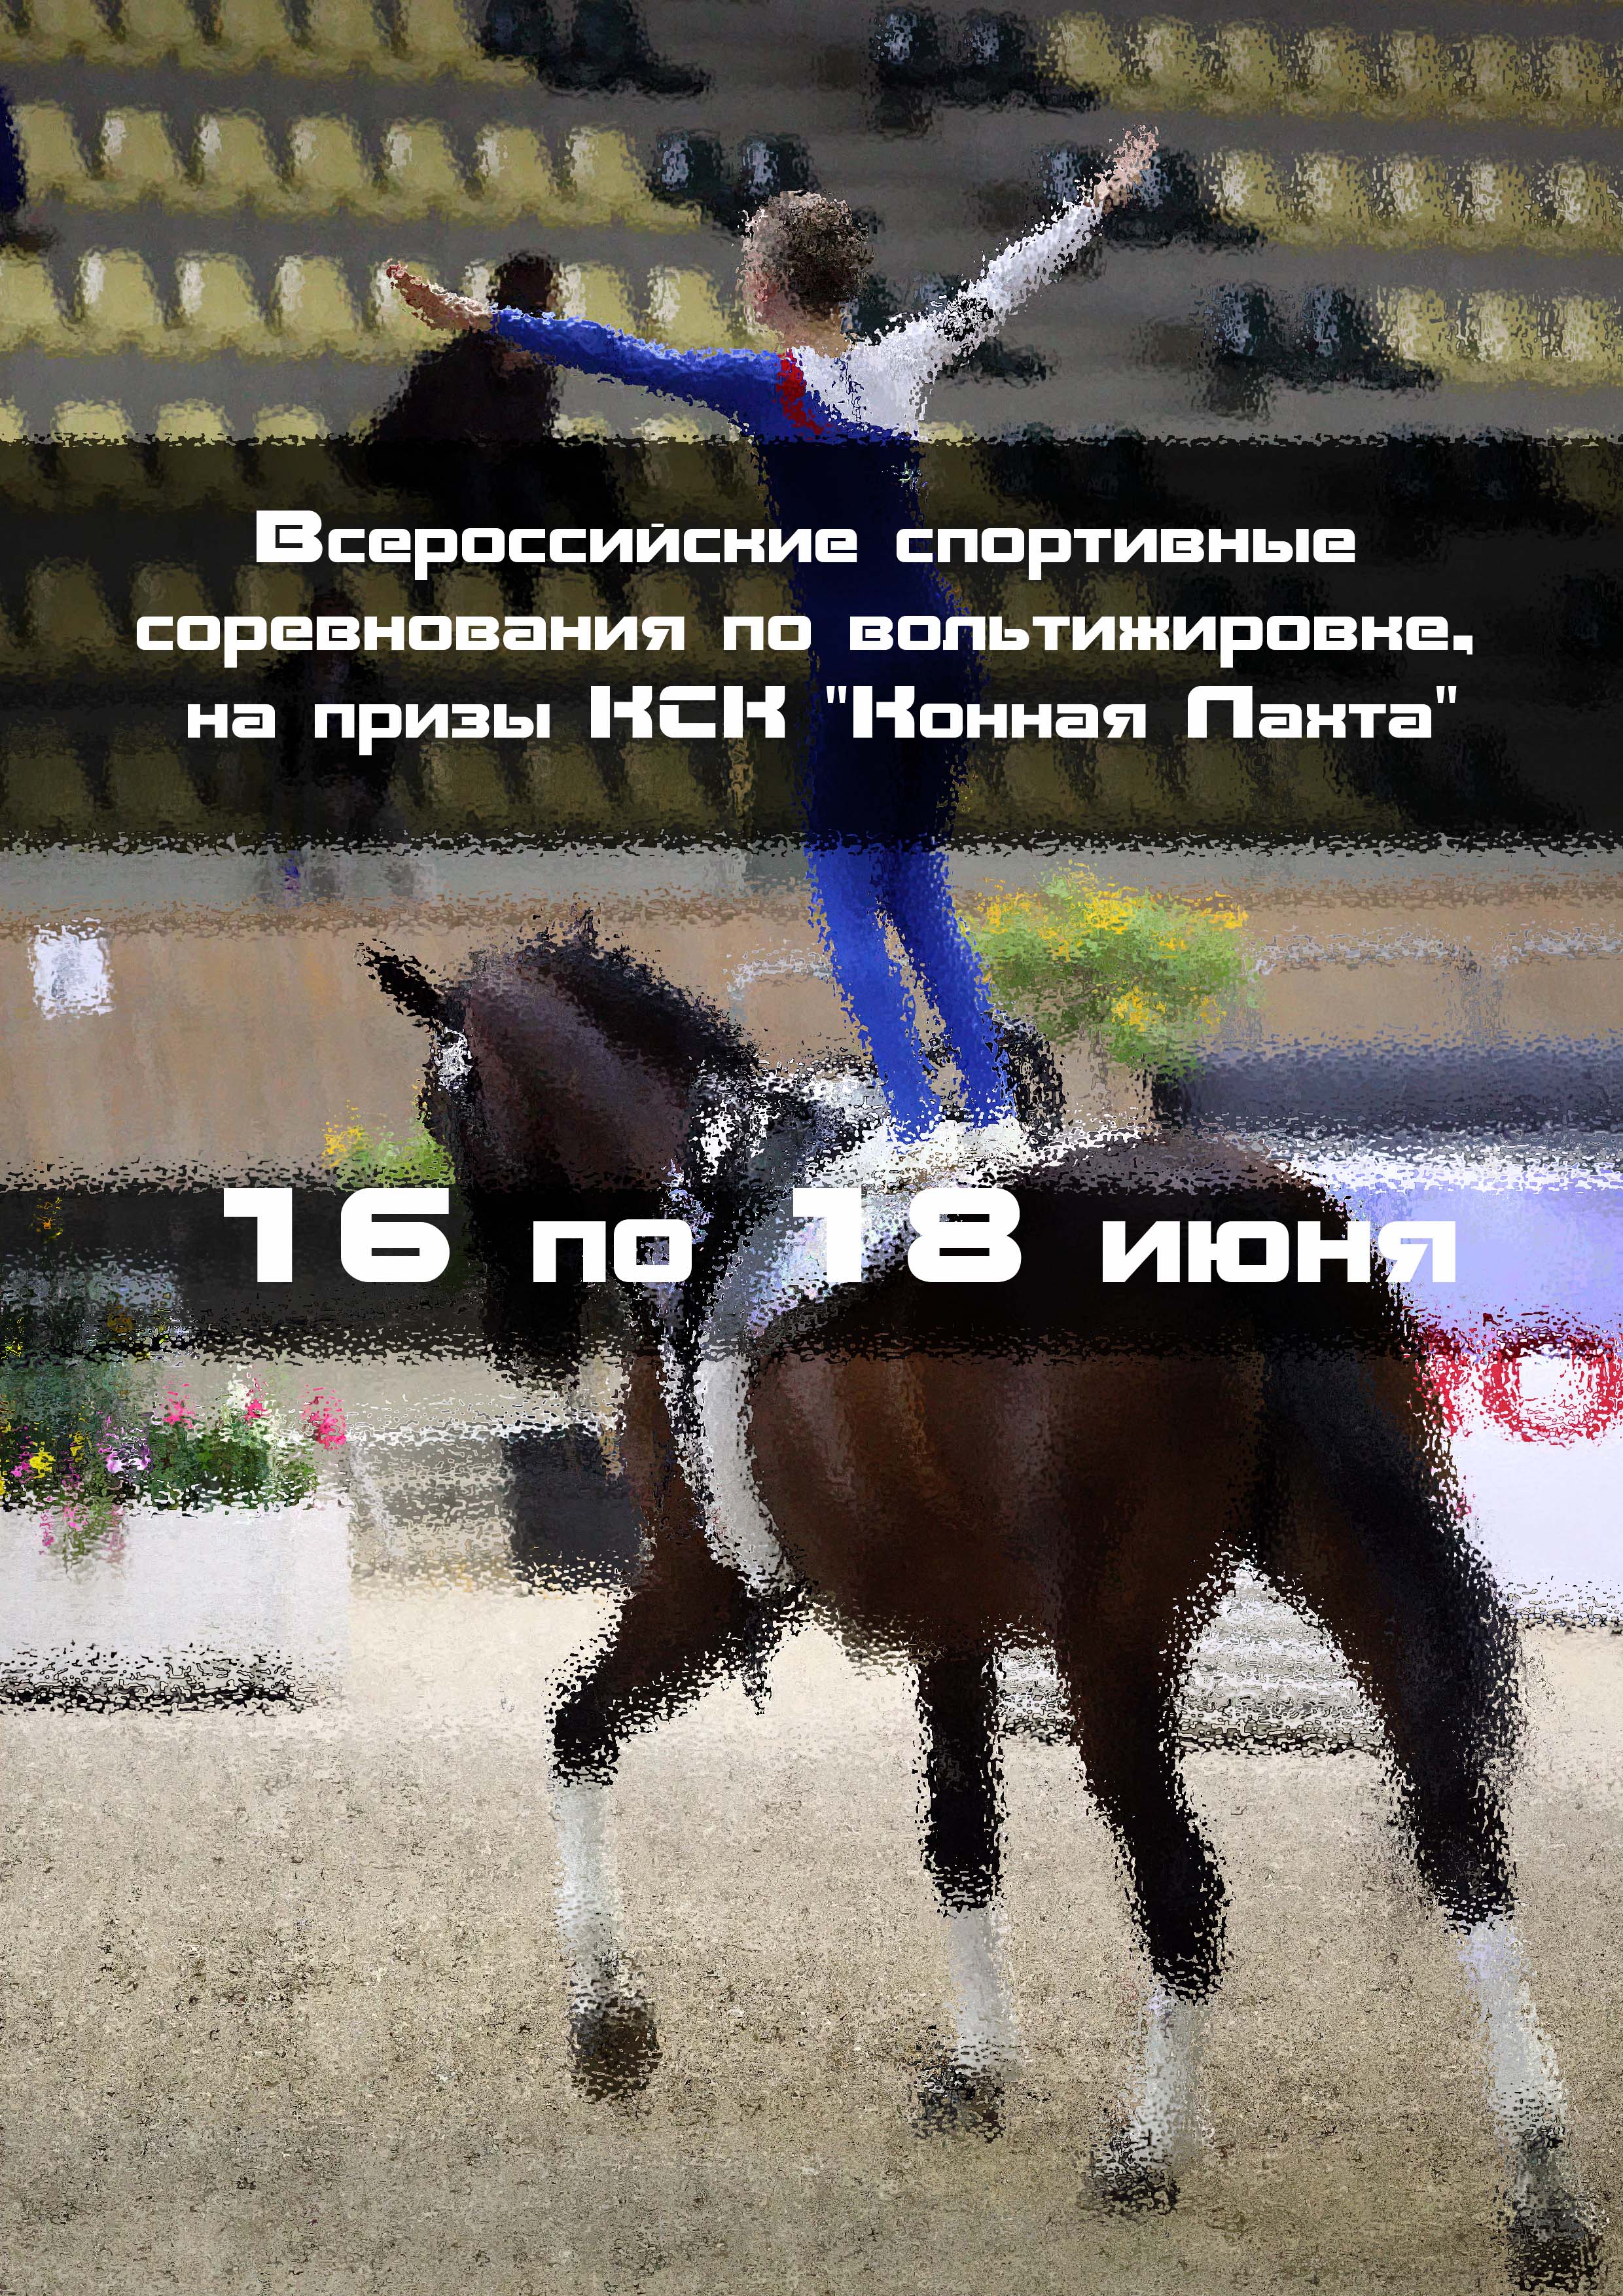 Всероссийские спортивные соревнования по вольтижировке, на призы КСК "Конная Лахта" 16  чэрвеня
 2023  год
 